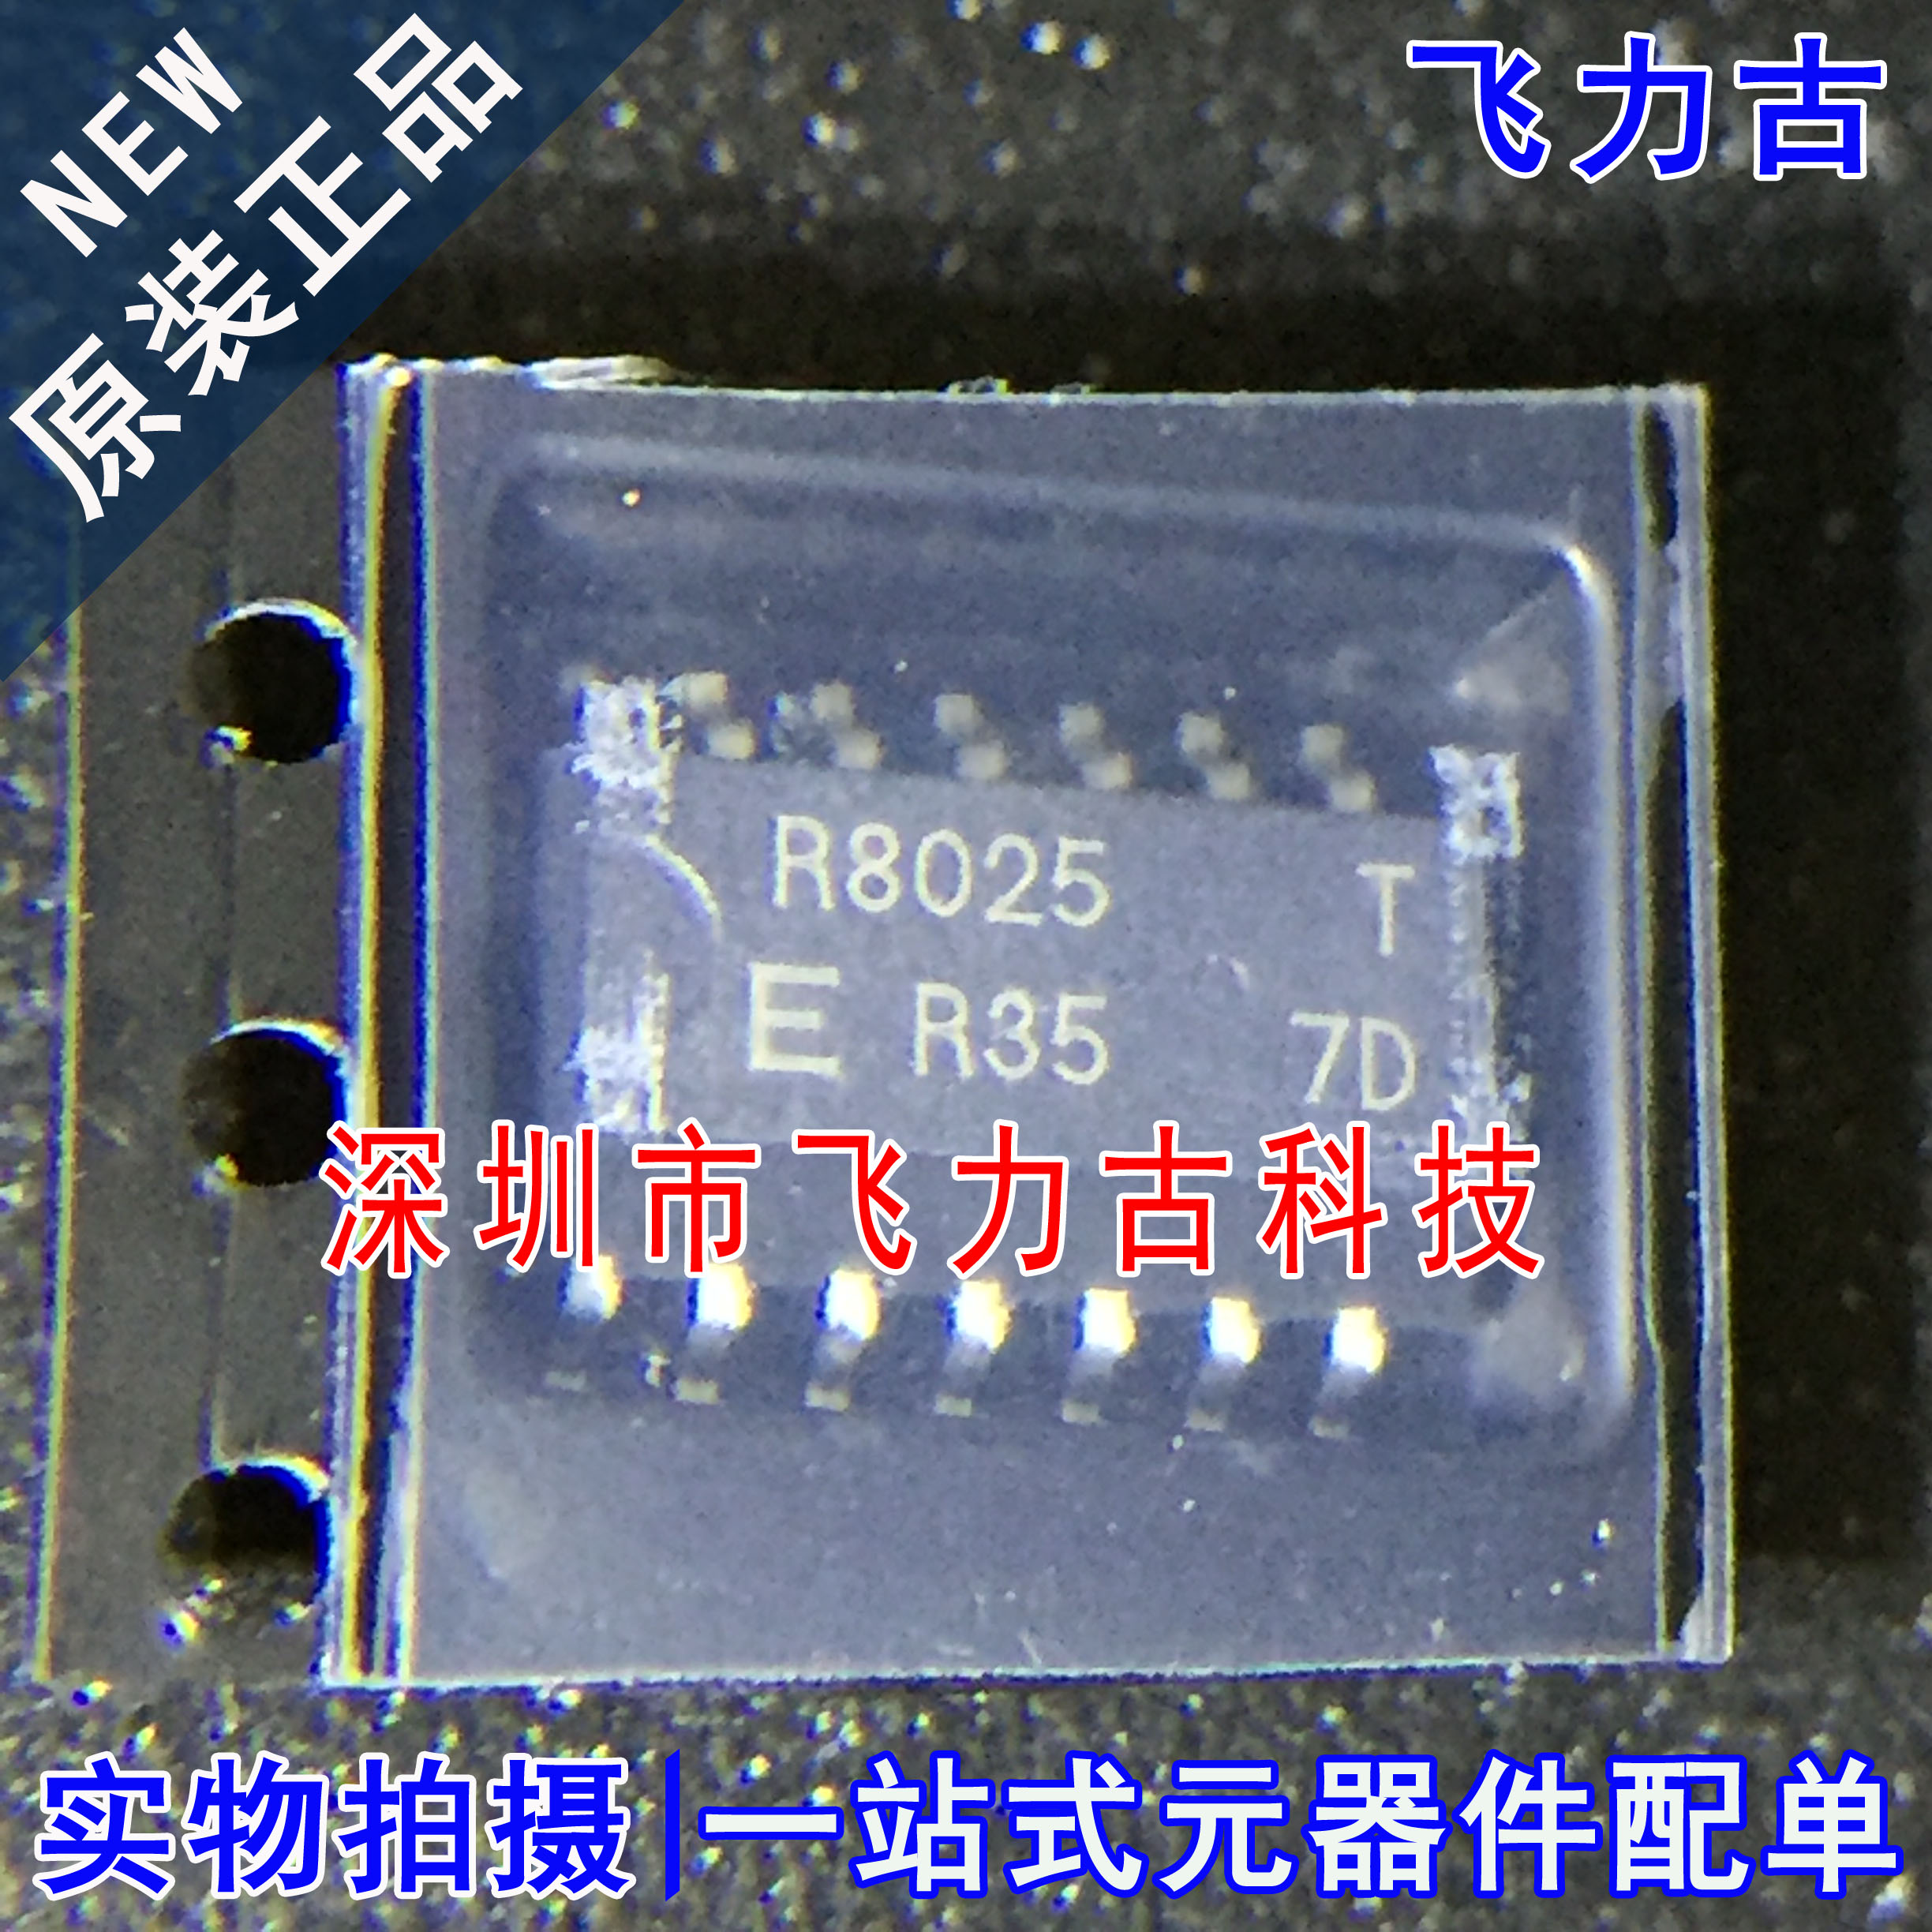 全新 RX-8025T/UC RX8025T-UB RX-8025T RX8025T R8025 SOP16芯片 电子元器件市场 芯片 原图主图